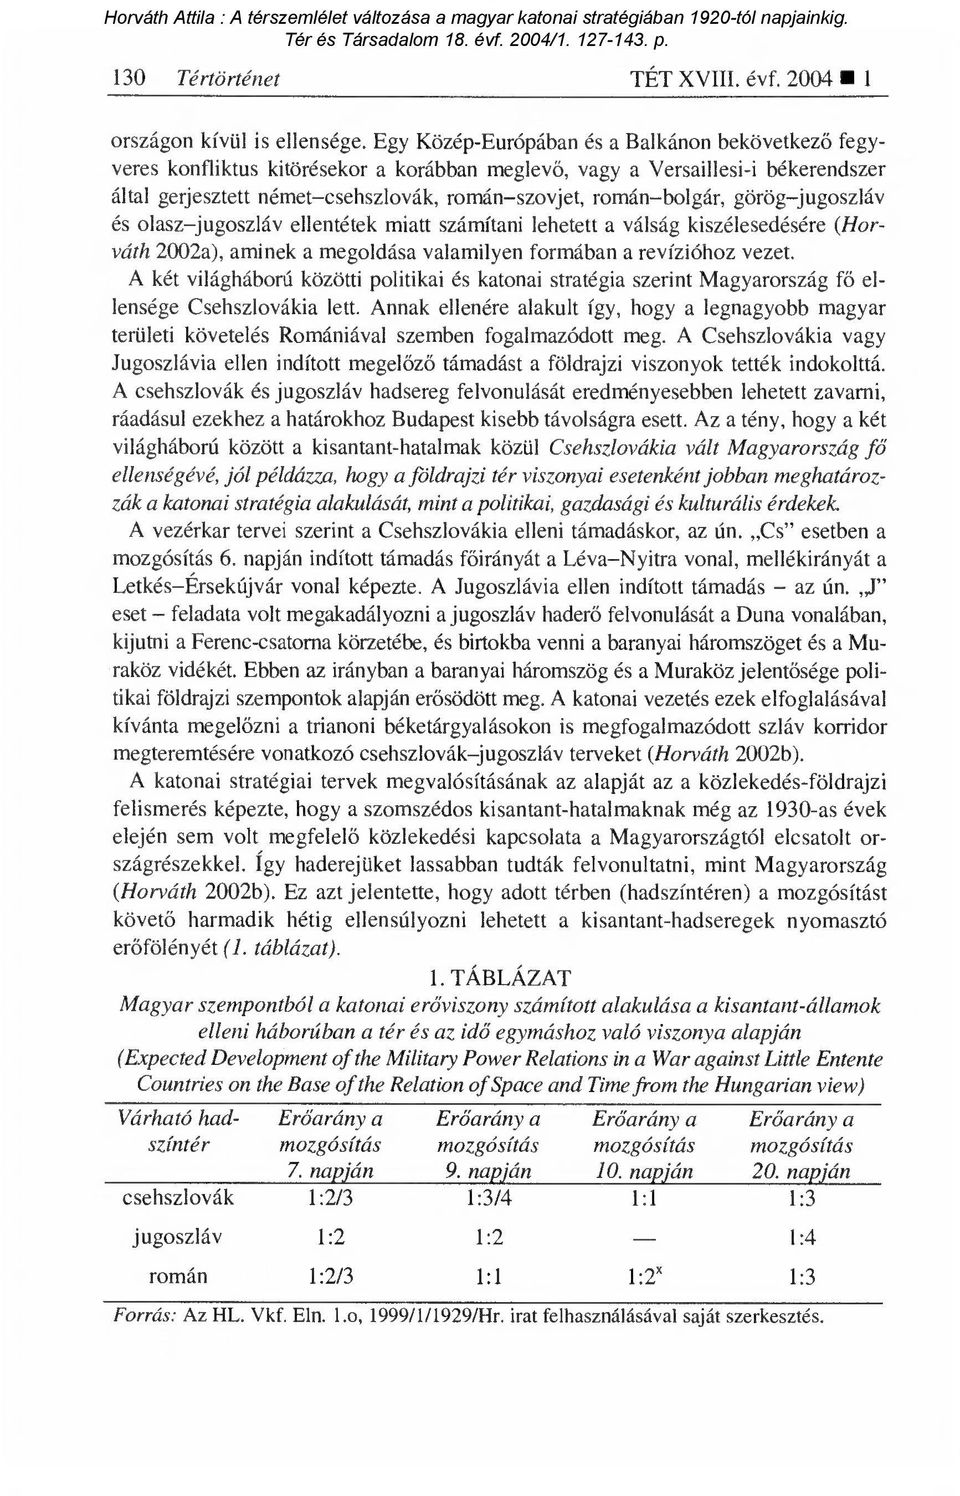 bolgár, görög jugoszláv és olasz jugoszláv ellentétek miatt számítani lehetett a válság kiszélesedésére (Horváth 2002a), aminek a megoldása valamilyen formában a revízióhoz vezet.